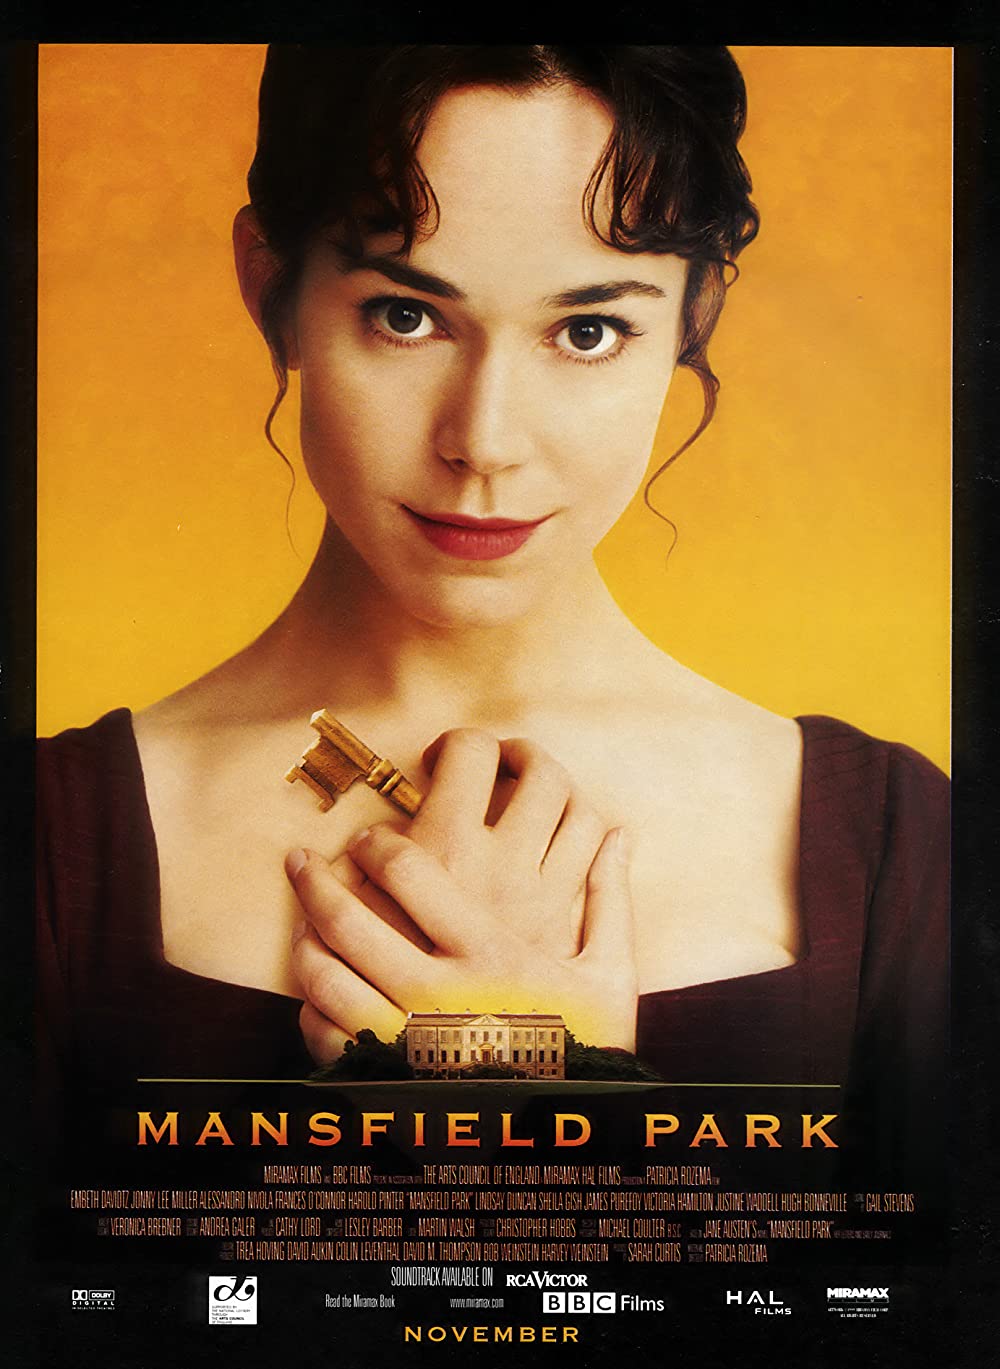 Filmbeschreibung zu Mansfield Park